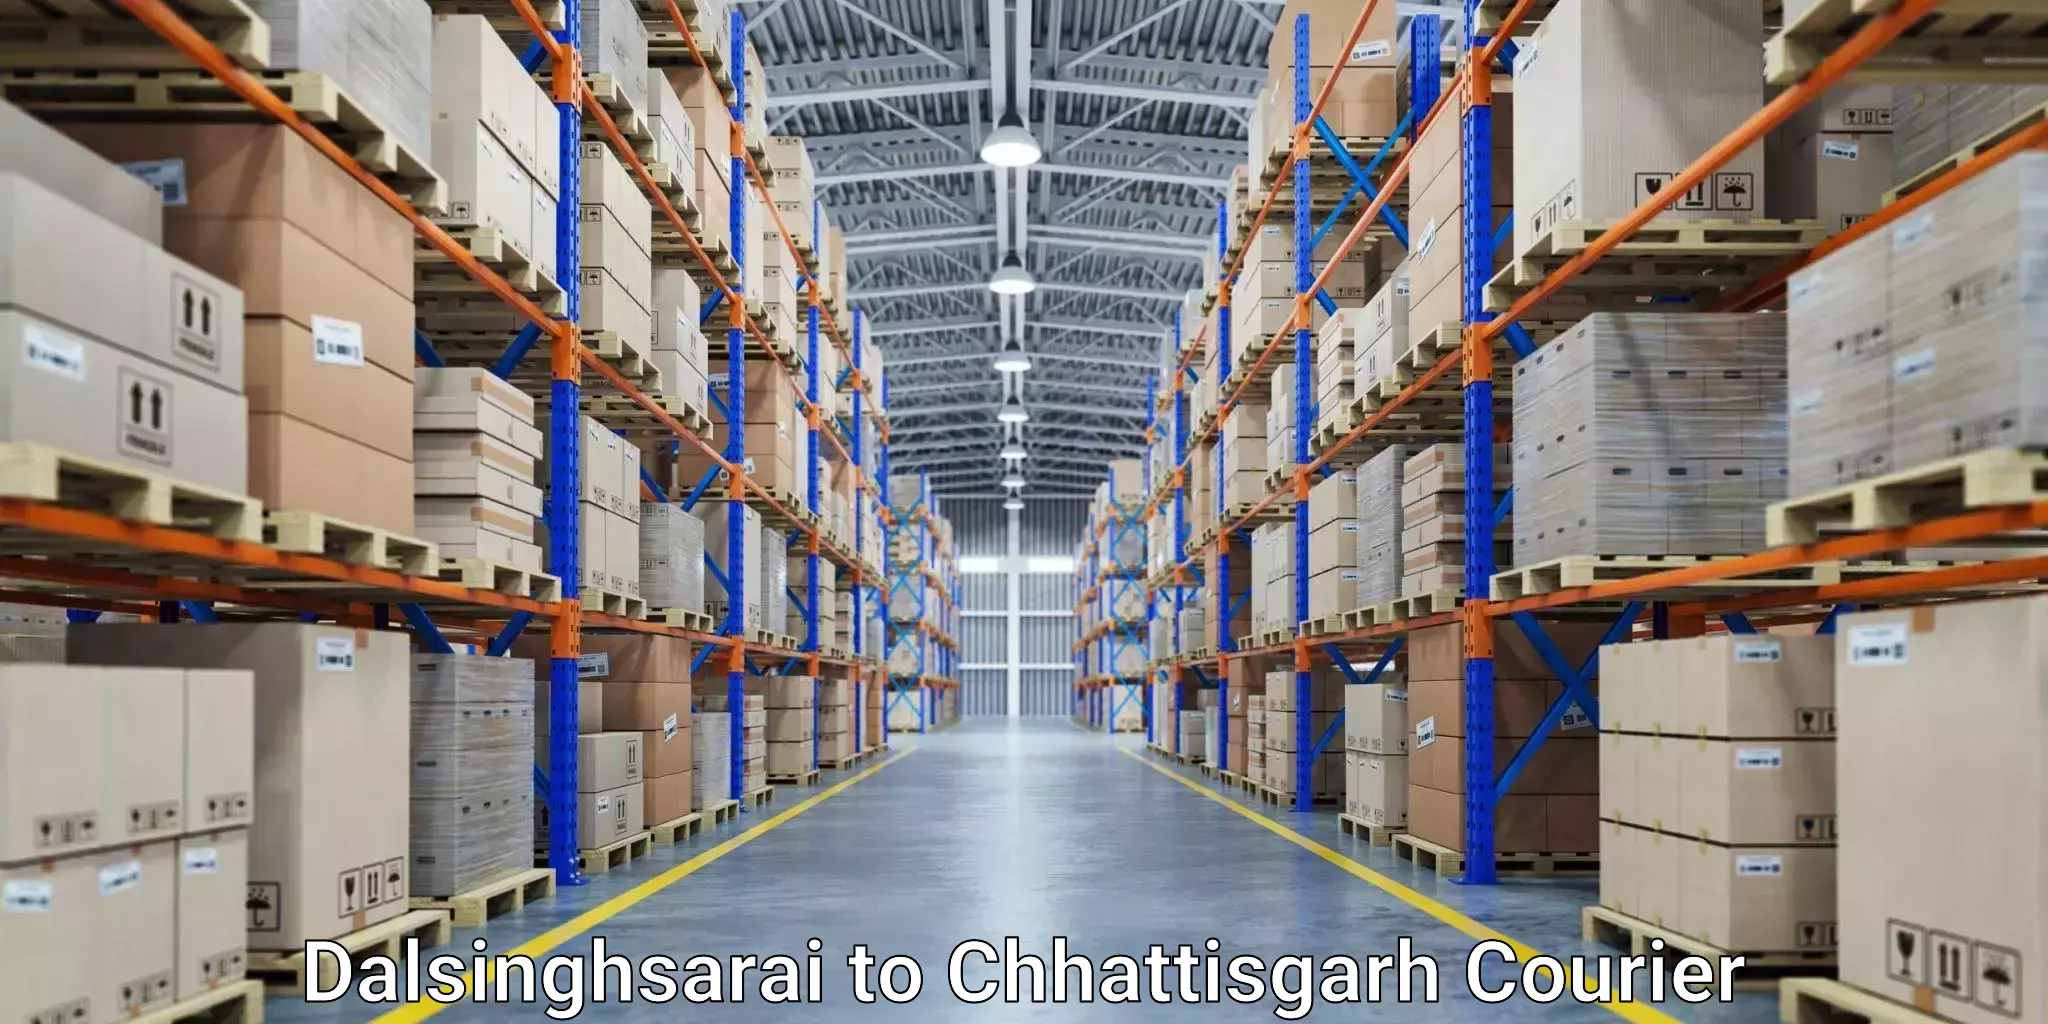 Digital courier platforms in Dalsinghsarai to Bijapur Chhattisgarh